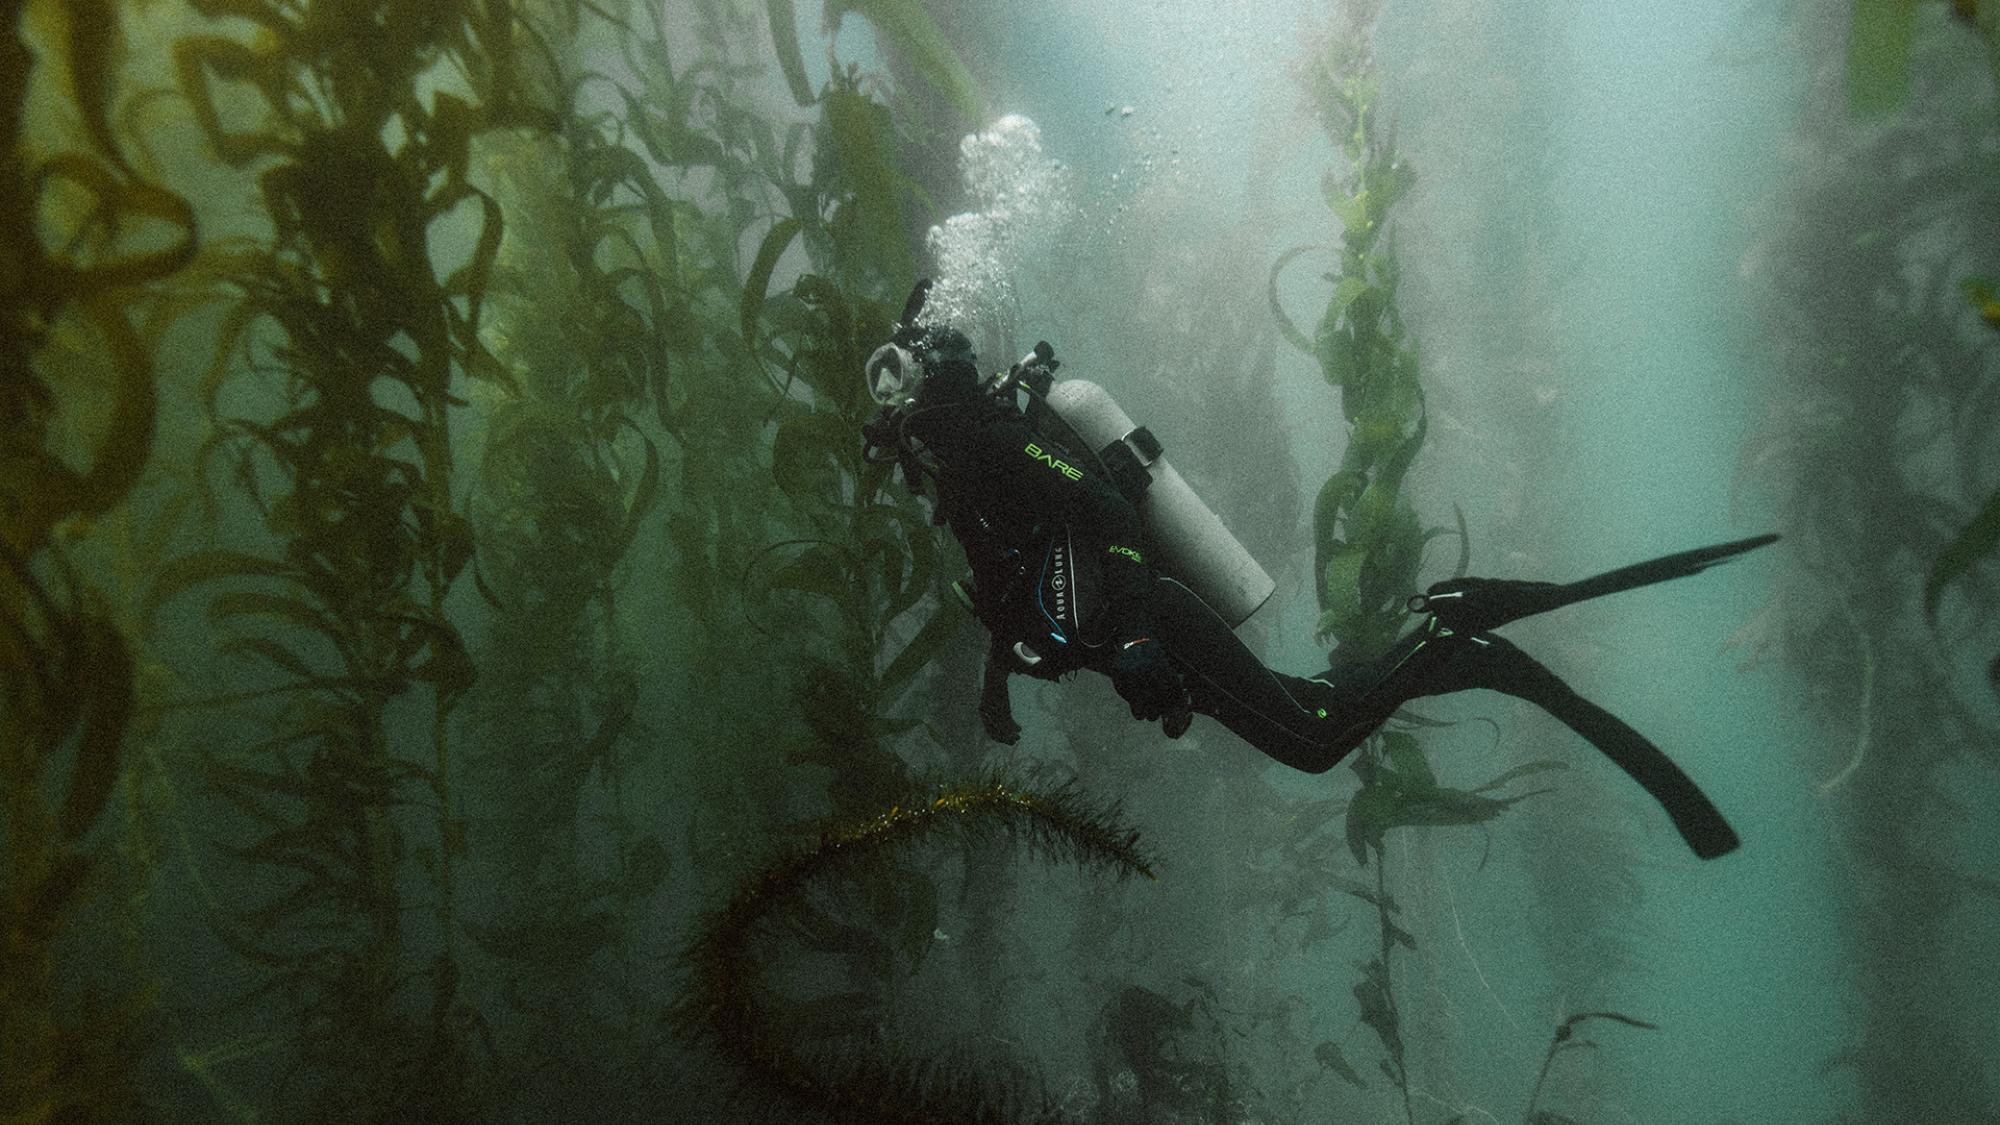 Johnie Gall swimming in between seaweed